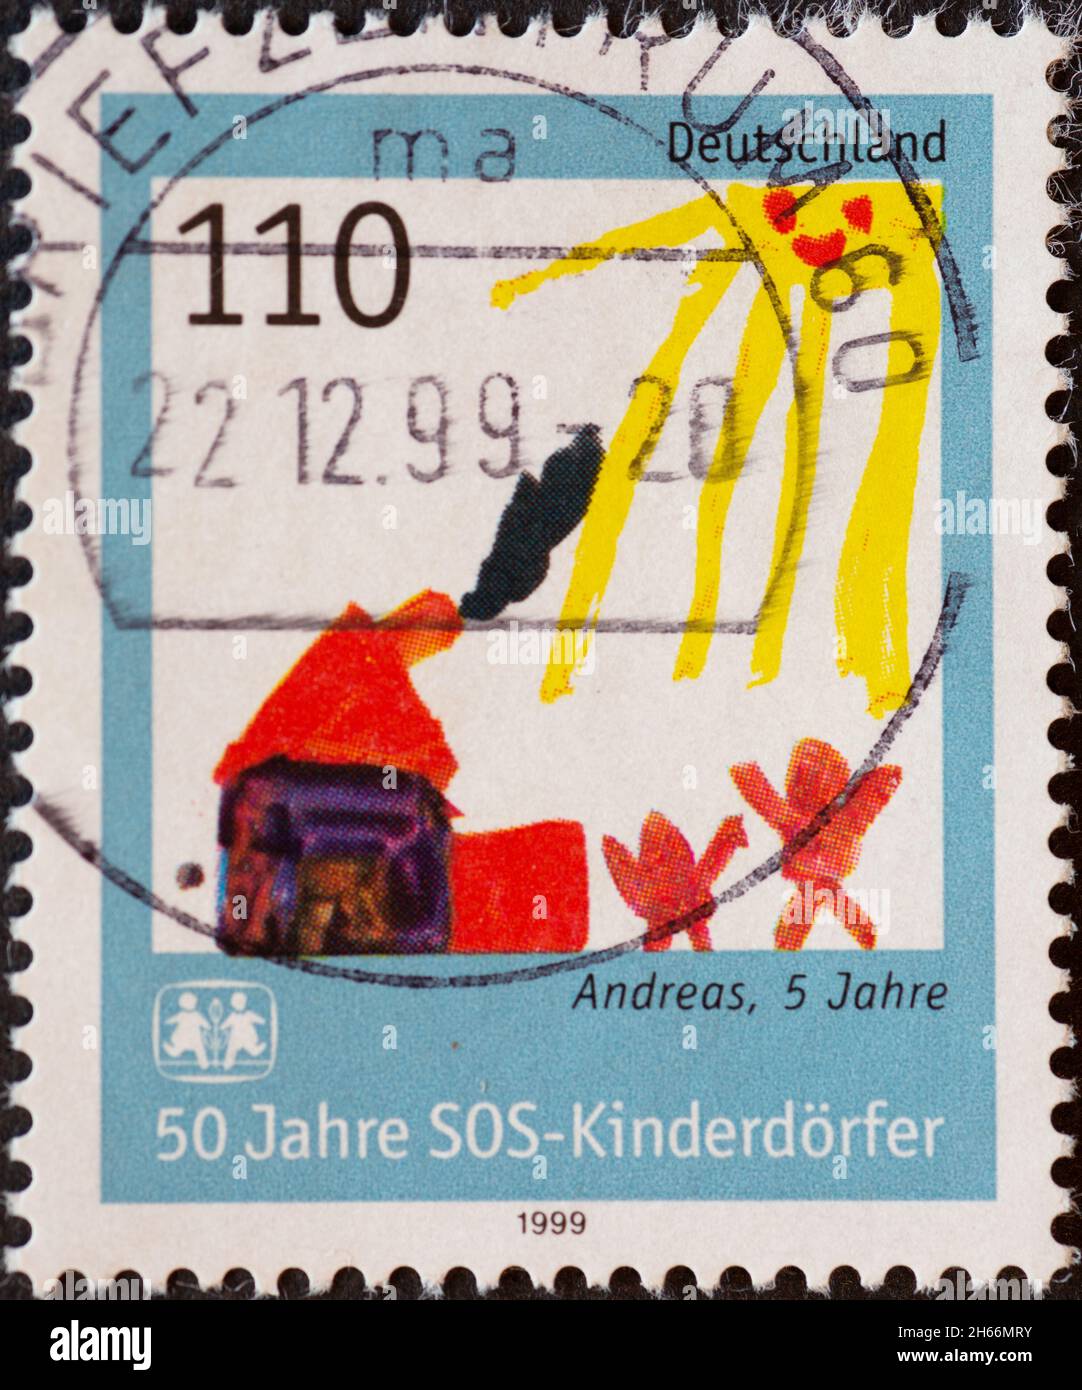 ALLEMAGNE - VERS 1999: Timbre-poste de l'Allemagne, montrant un dessin d'enfants à l'occasion de 50 ans de villages d'enfants SOS Banque D'Images